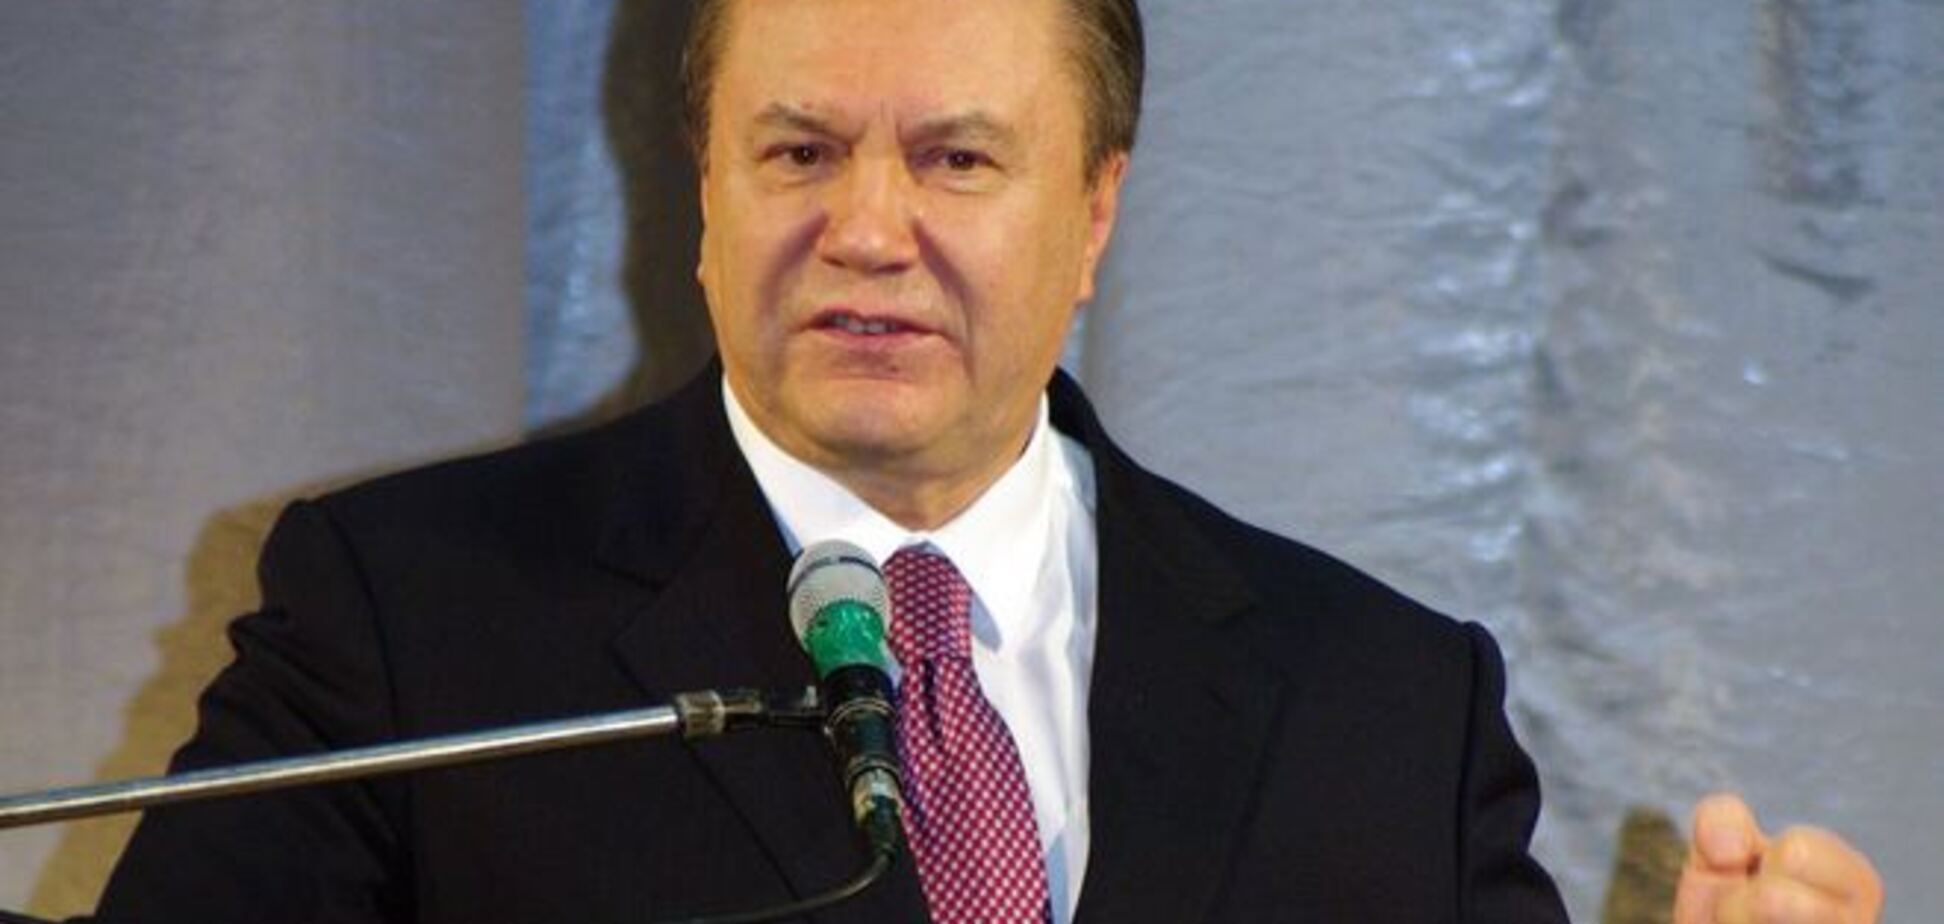 Аваков отбыл в Лондон возвращать 'сокровища Януковича'